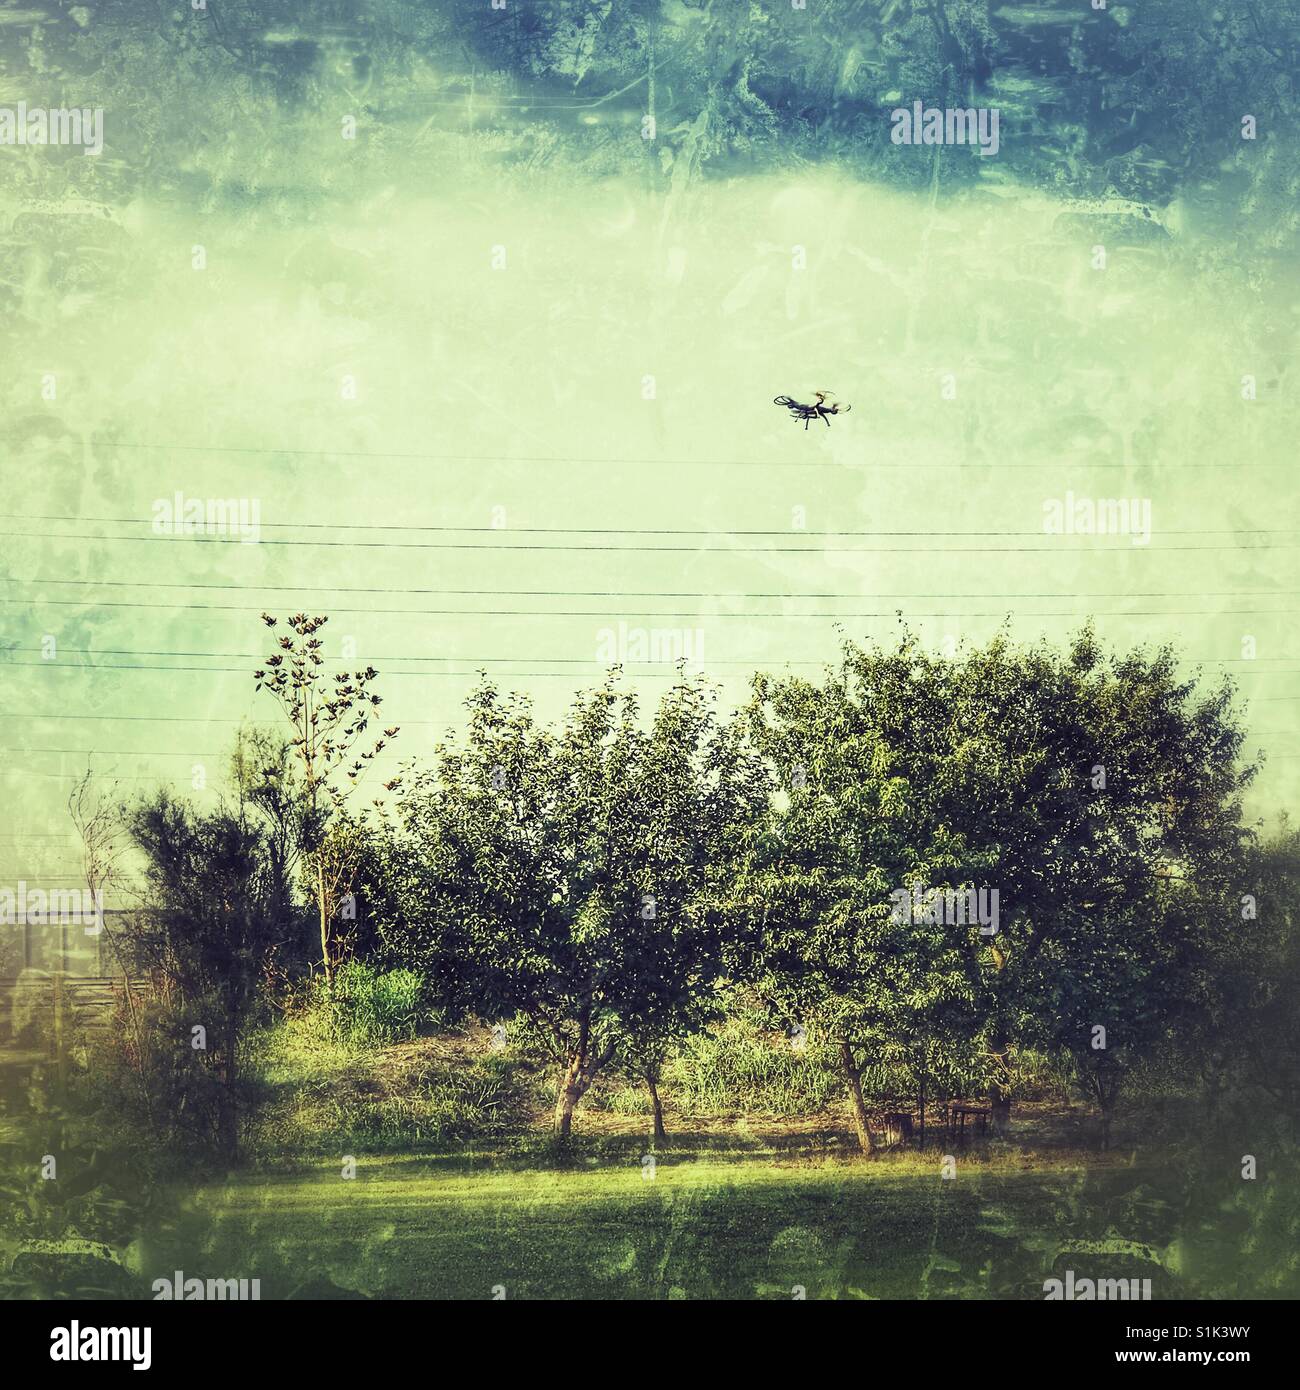 Drohne fliegen über eine grüne Wiese und Bäume, die Vermeidung von Stromleitungen Stockfoto